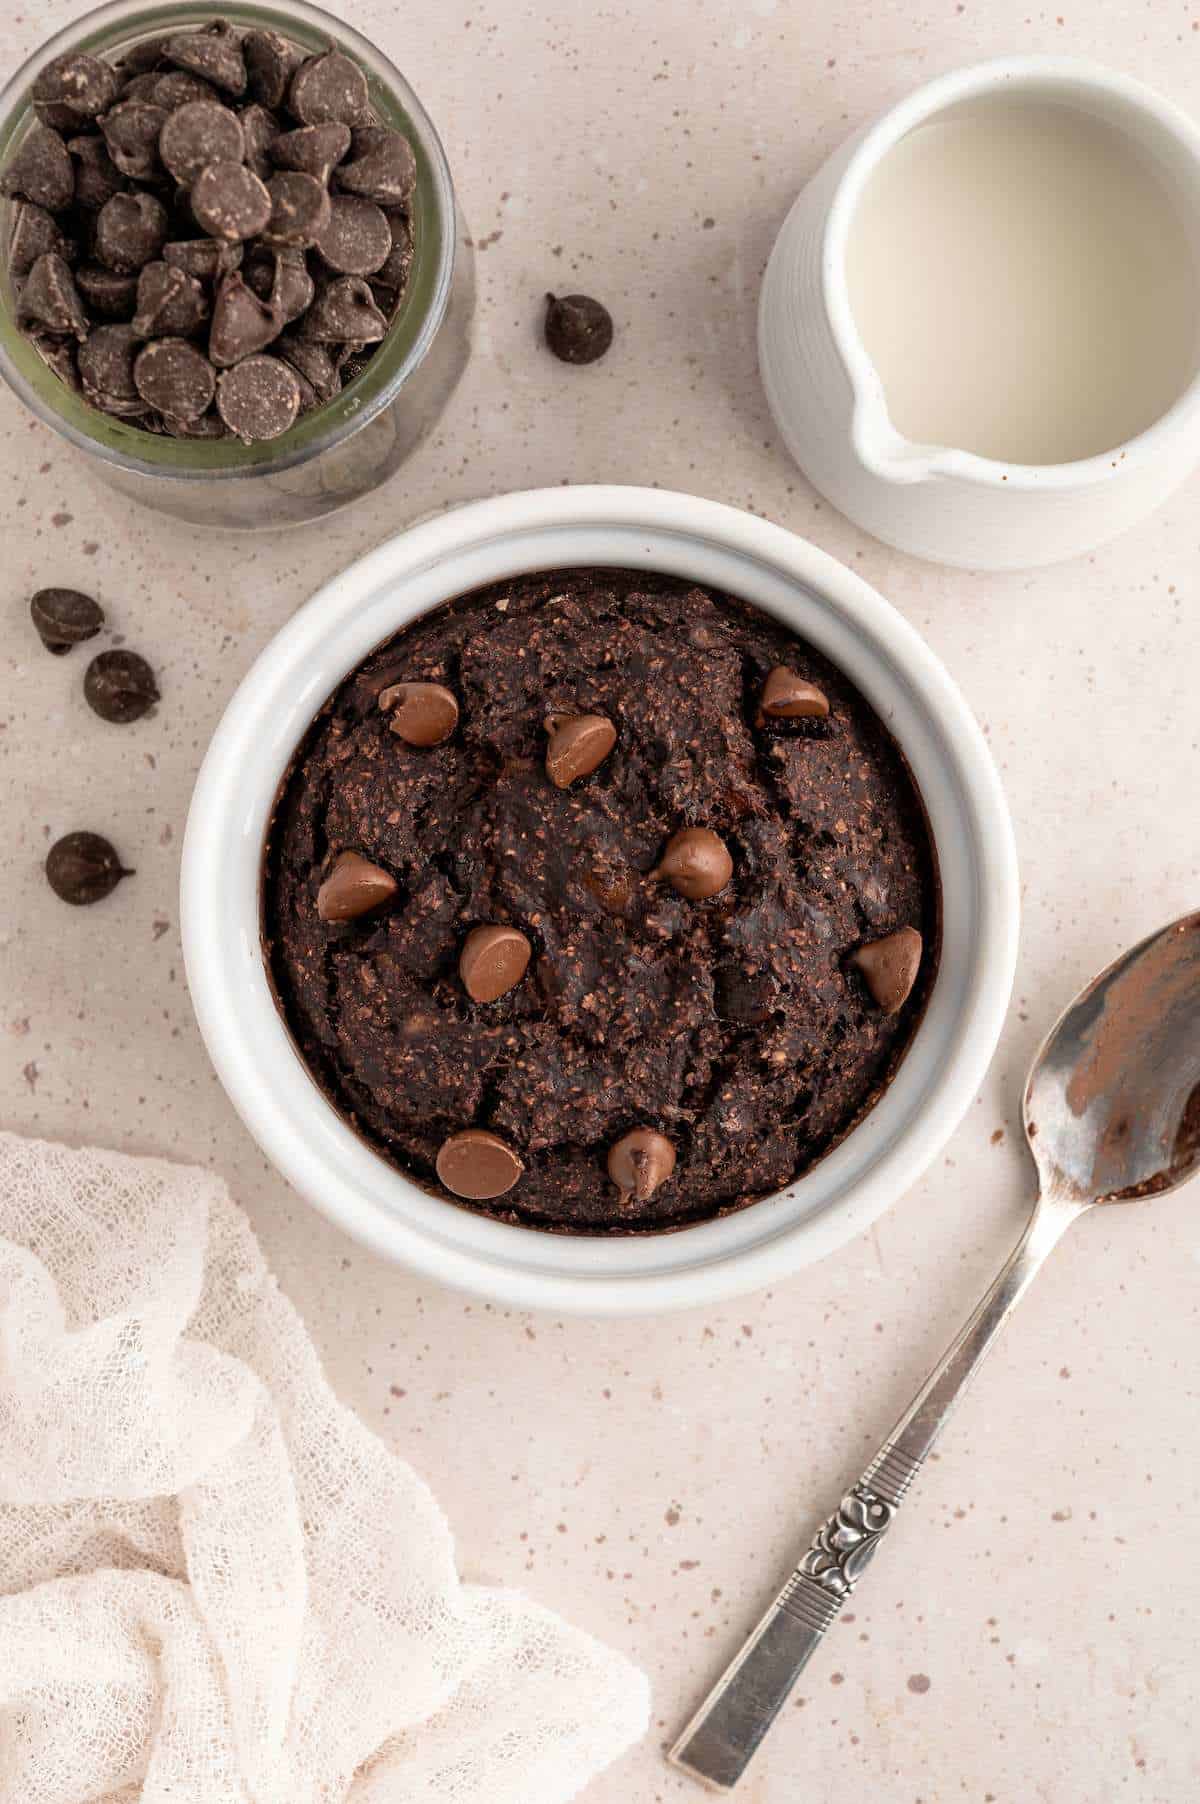 Chocolate baked oats protein mug cake in a ramekin.